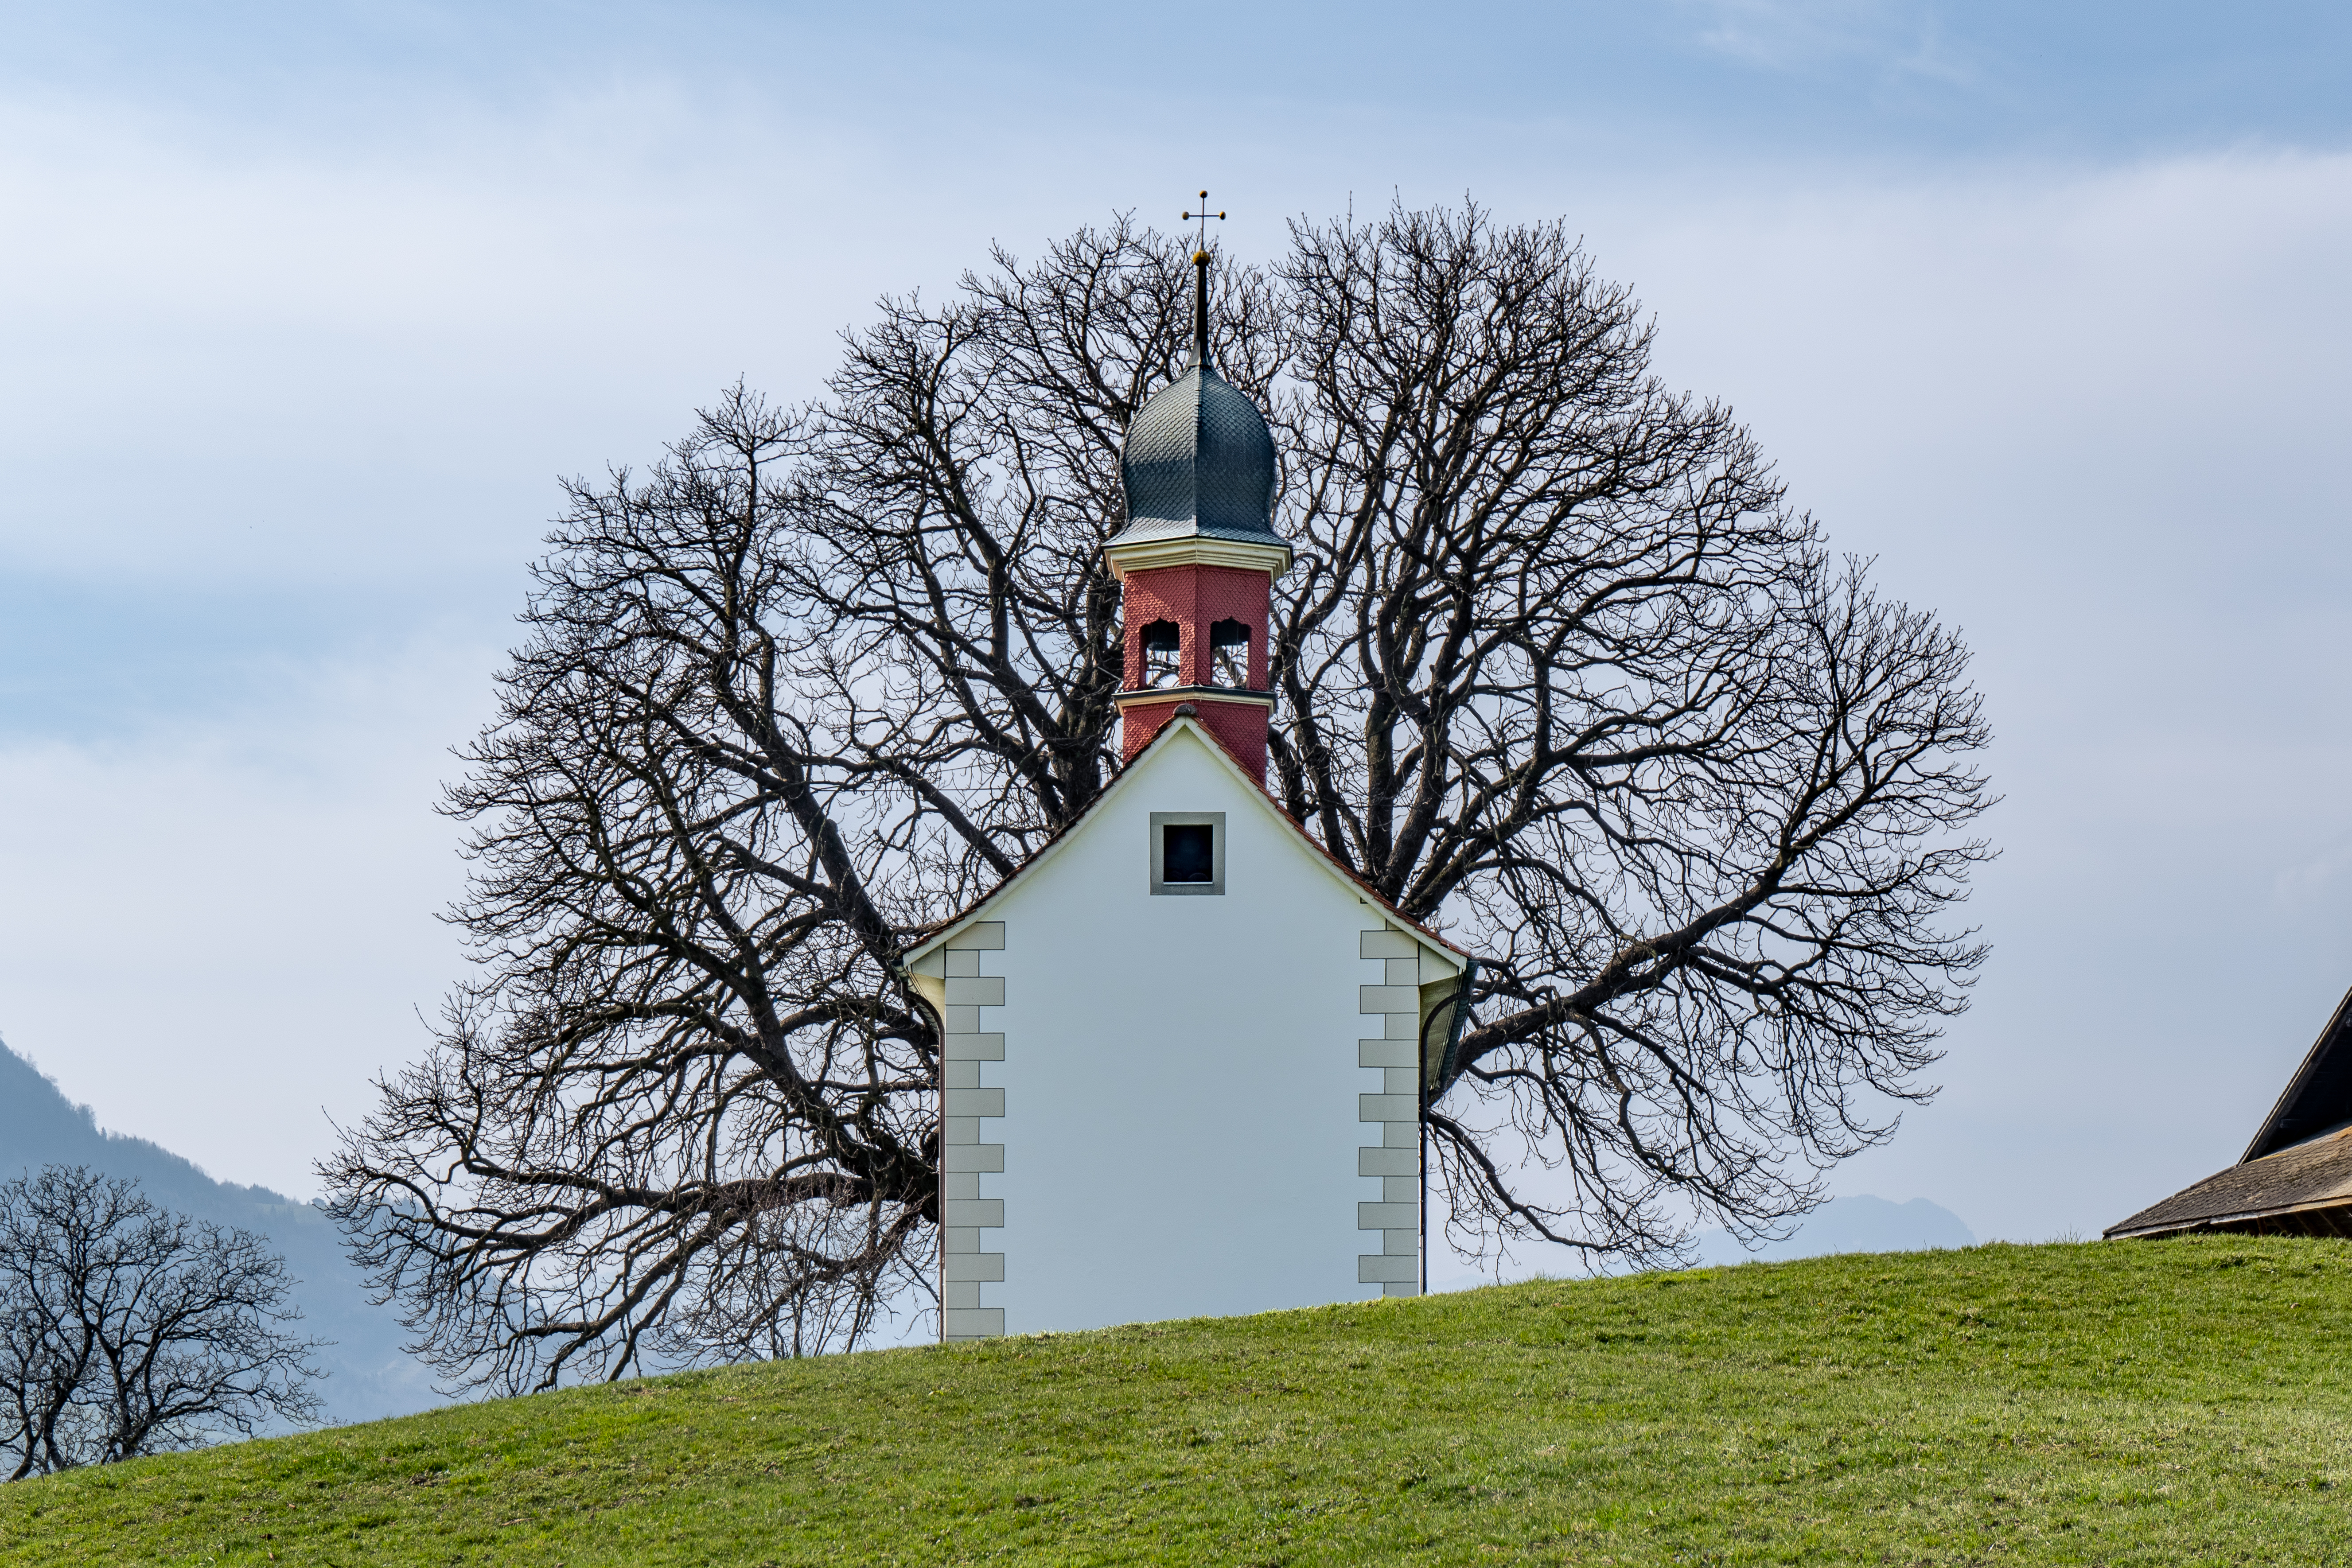 Auf dem Bild der im neugotischen Baustil errichteten Loretokapelle Ennerberg in Oberdorf erstrahlt eine malerische Kapelle in einer idyllischen Lage und einem bezaubernden Glockenturm, die eine Atmosphäre der Spiritualität und Ruhe vermittelt.